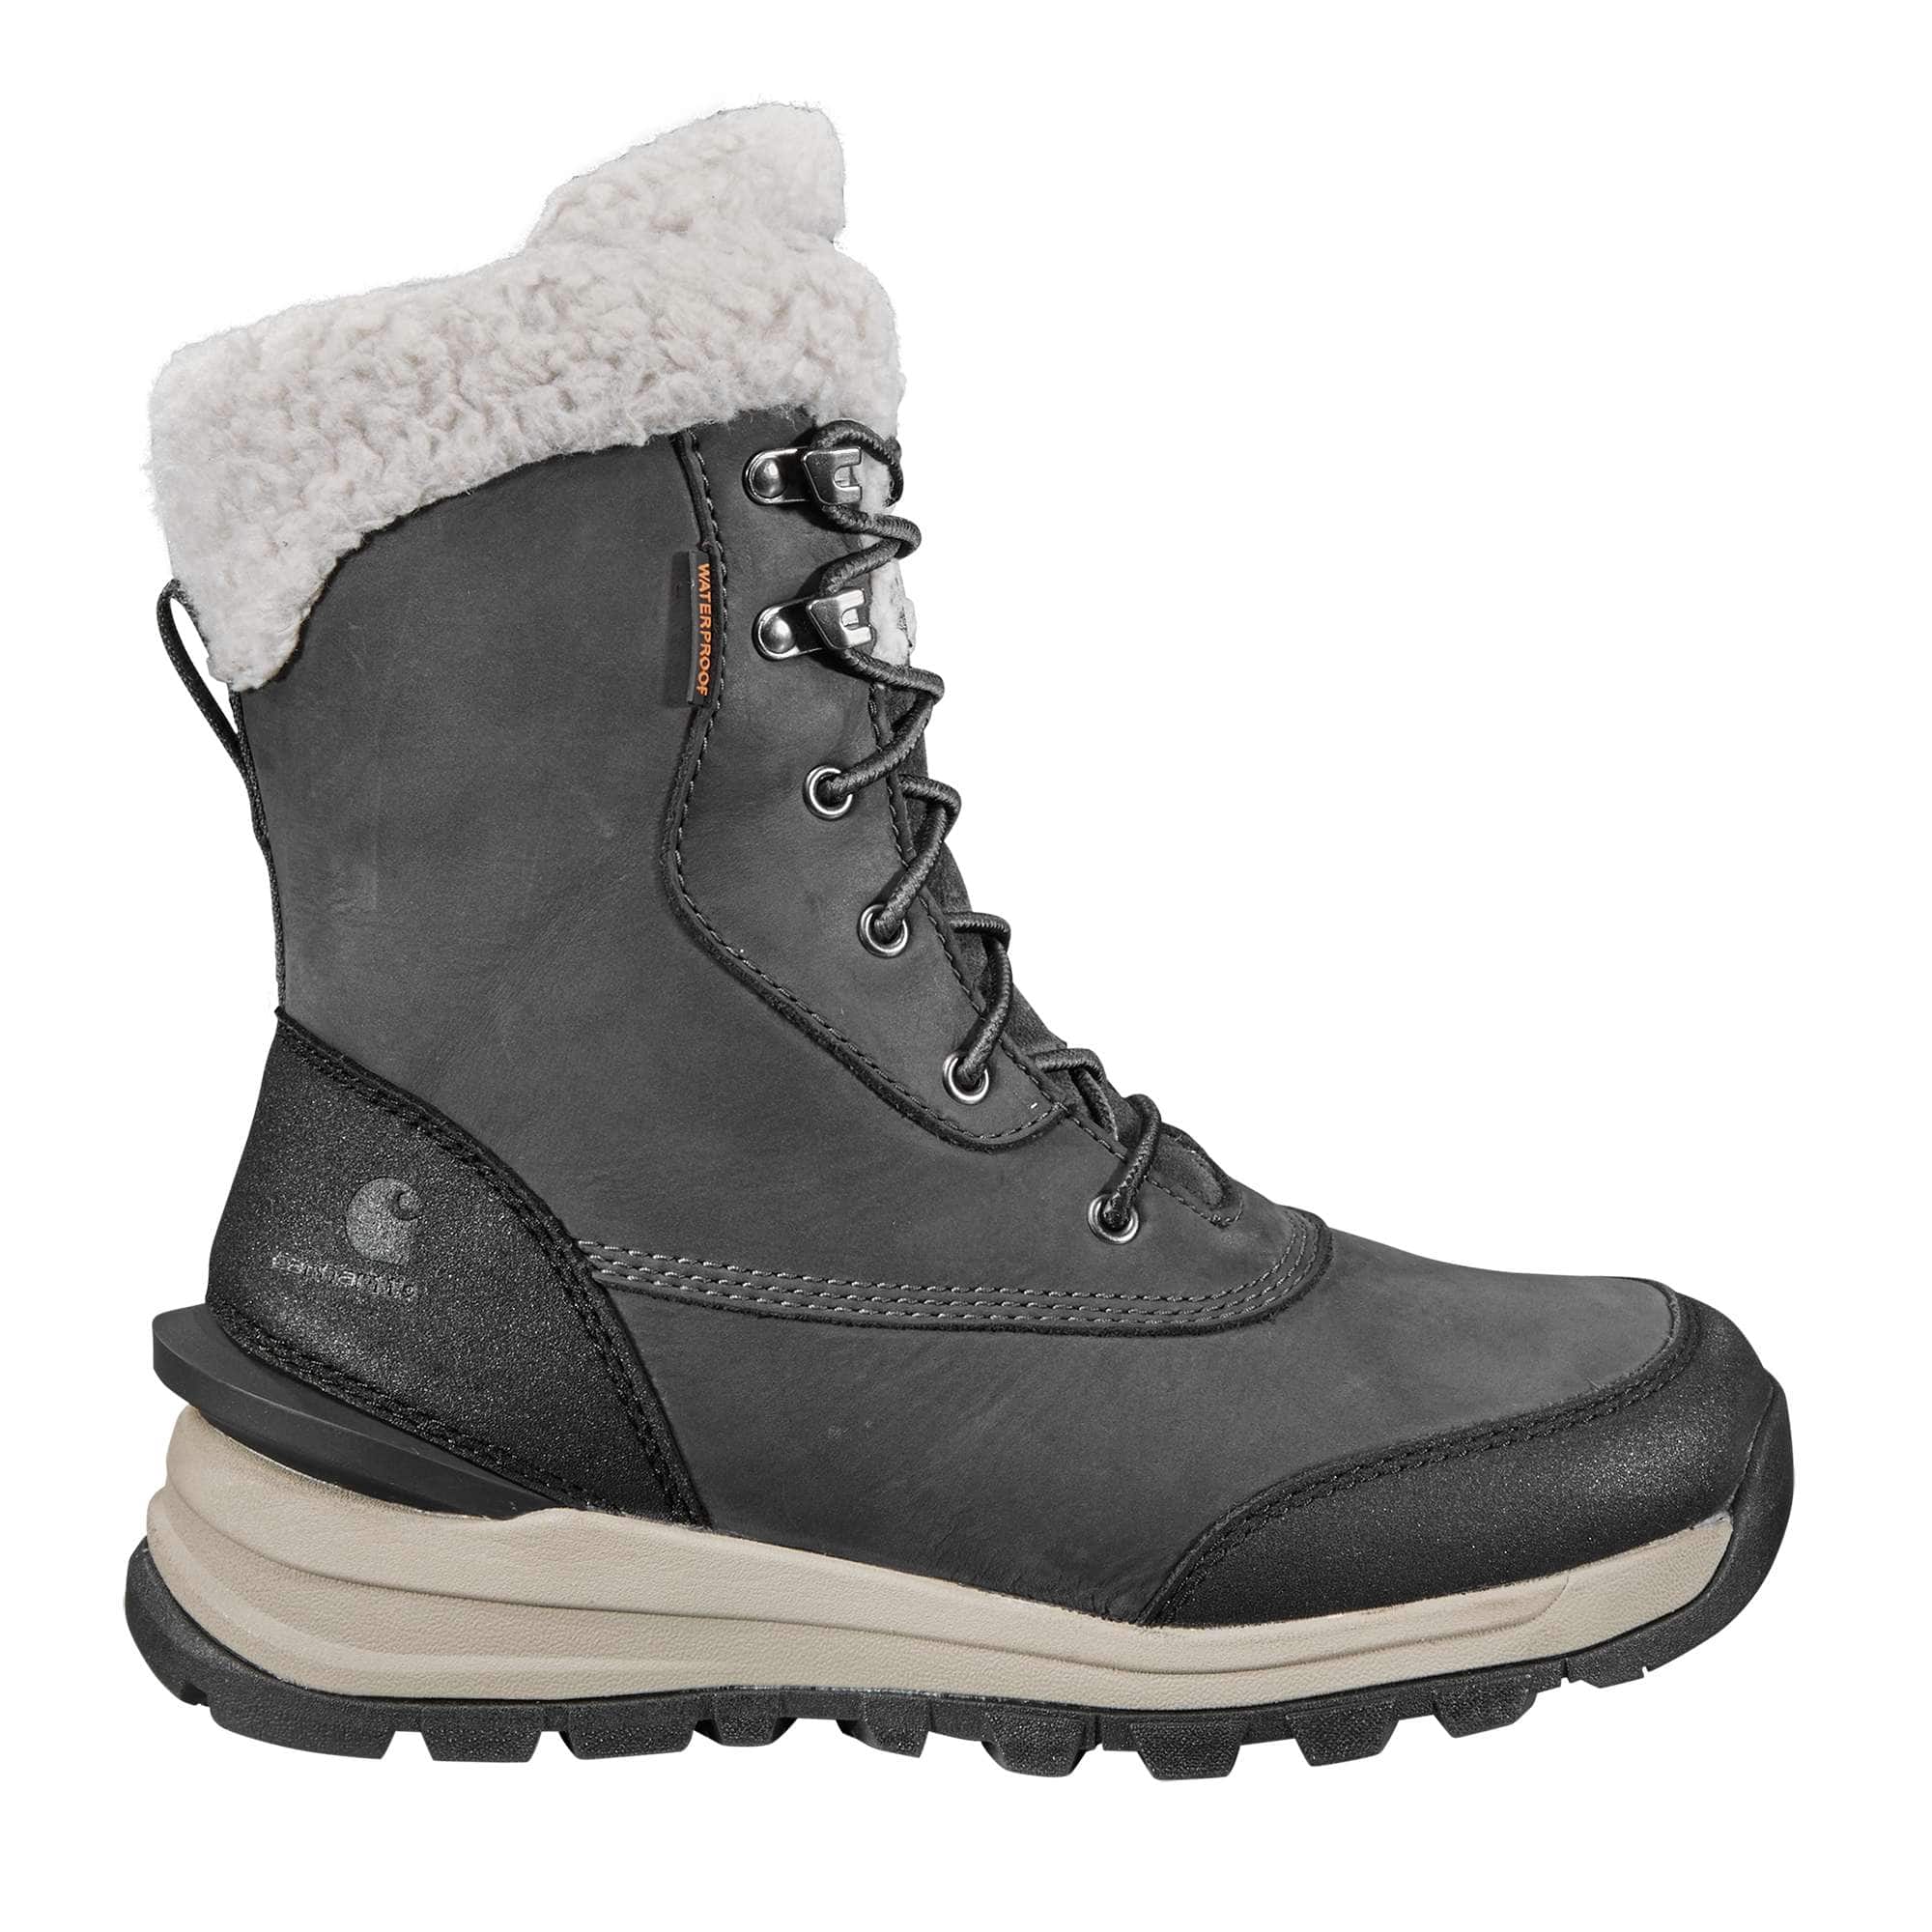 Insulated Winter Boot | Carhartt